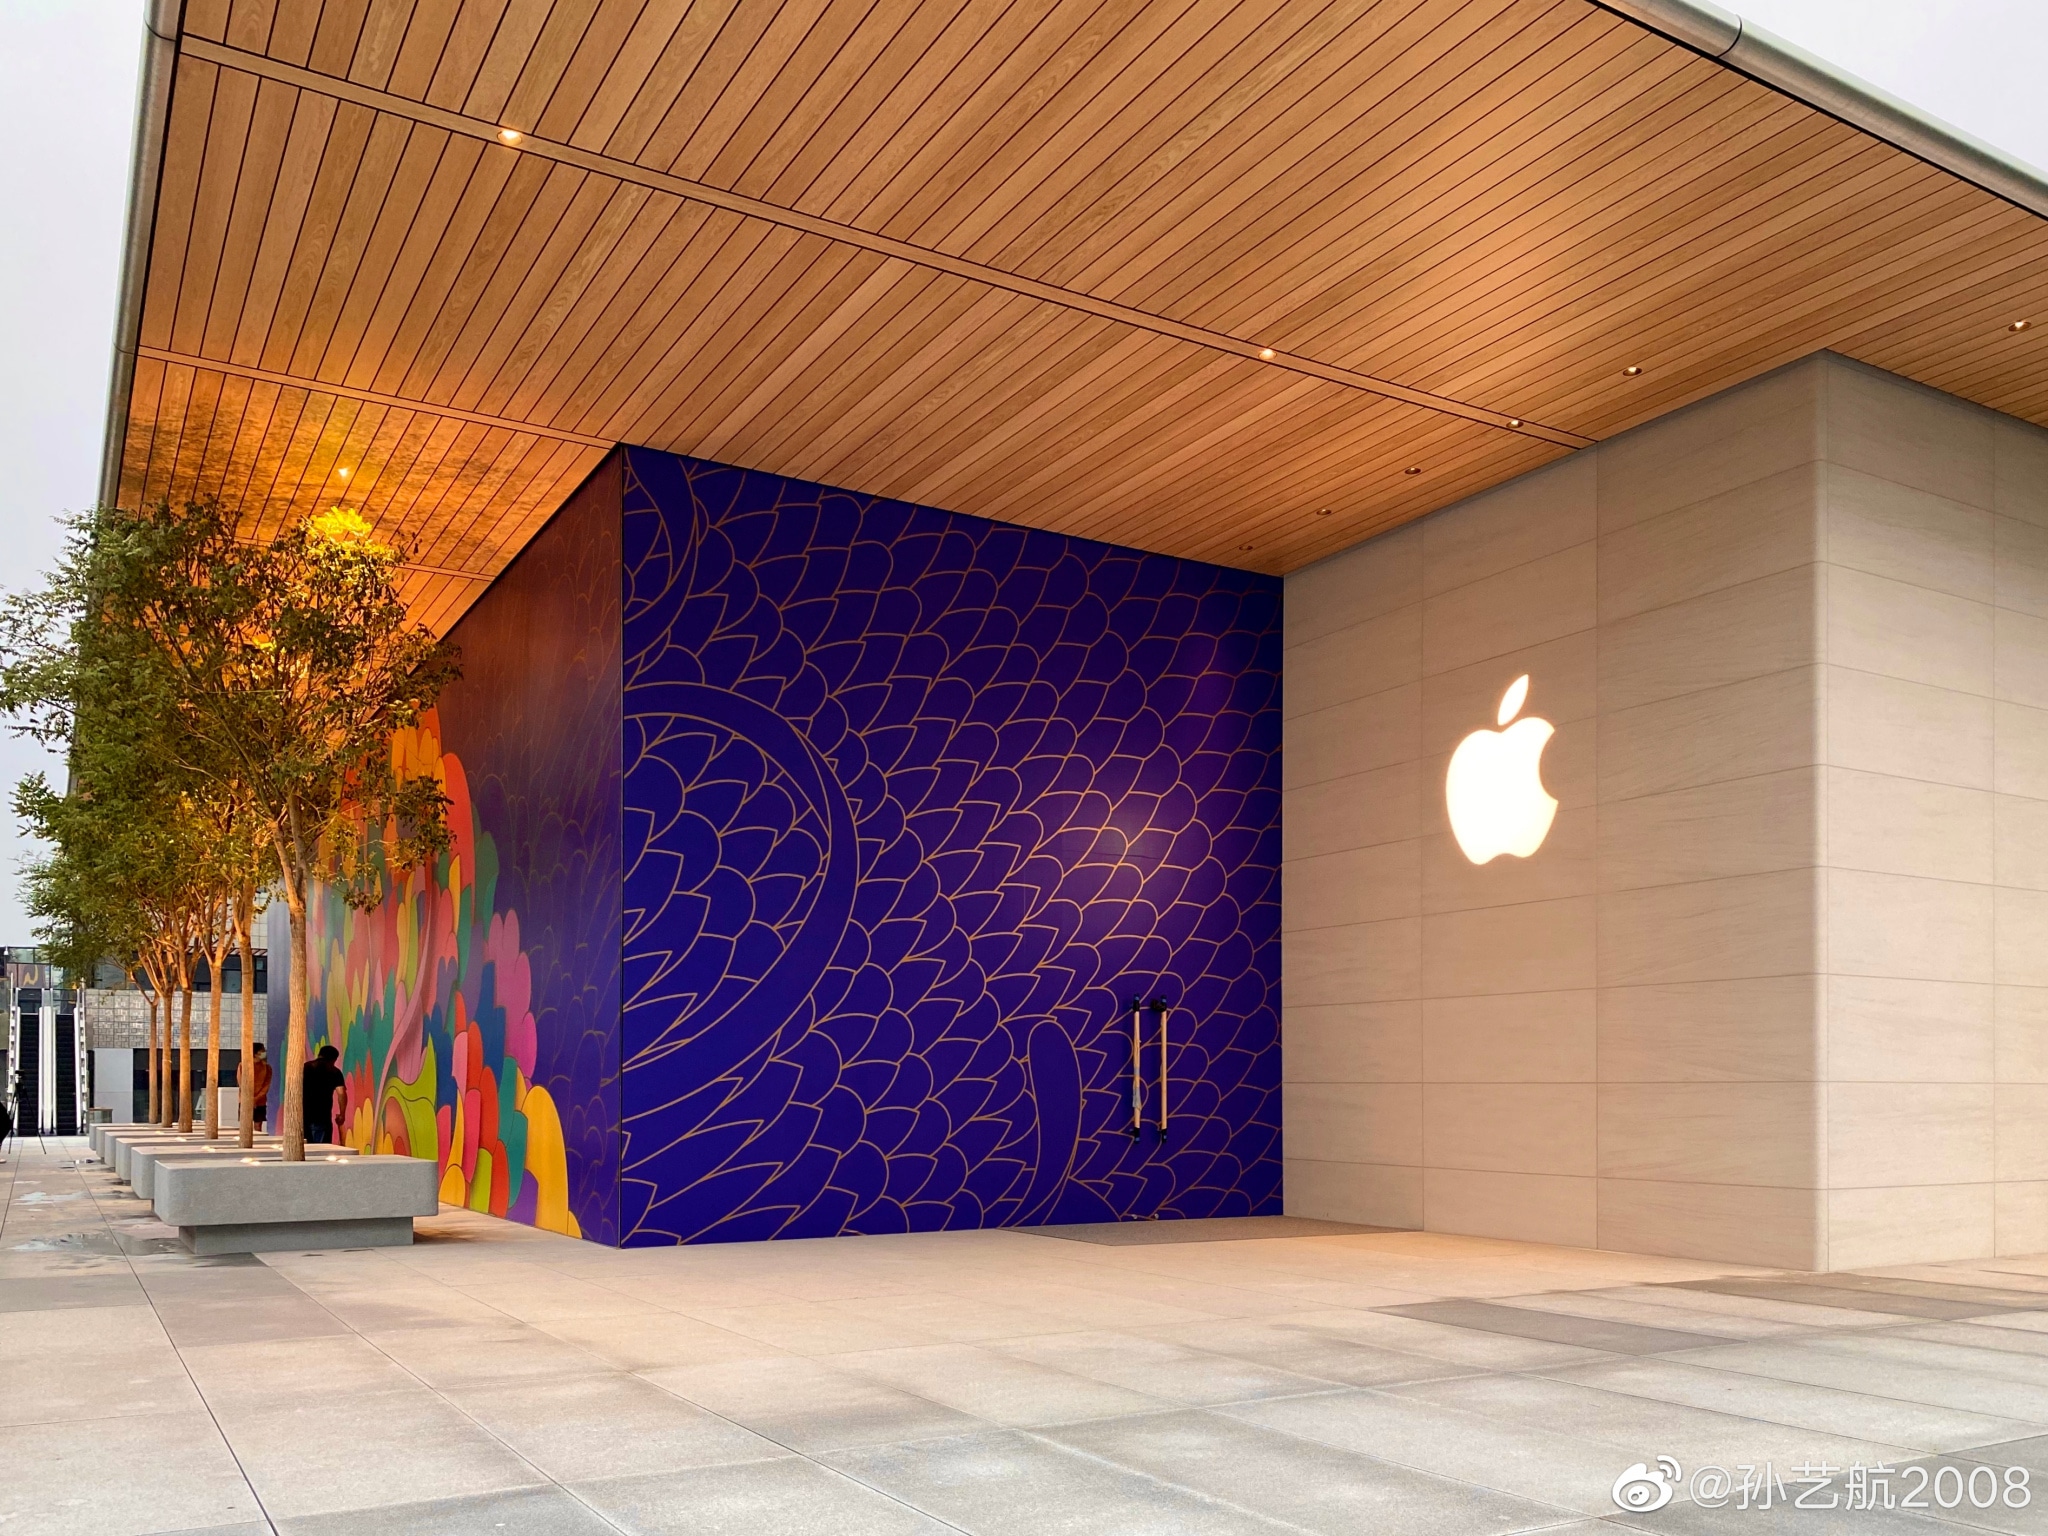 Apple usub, et näost näkku töökohad USA-s 2020. aastal tagasi ei tule